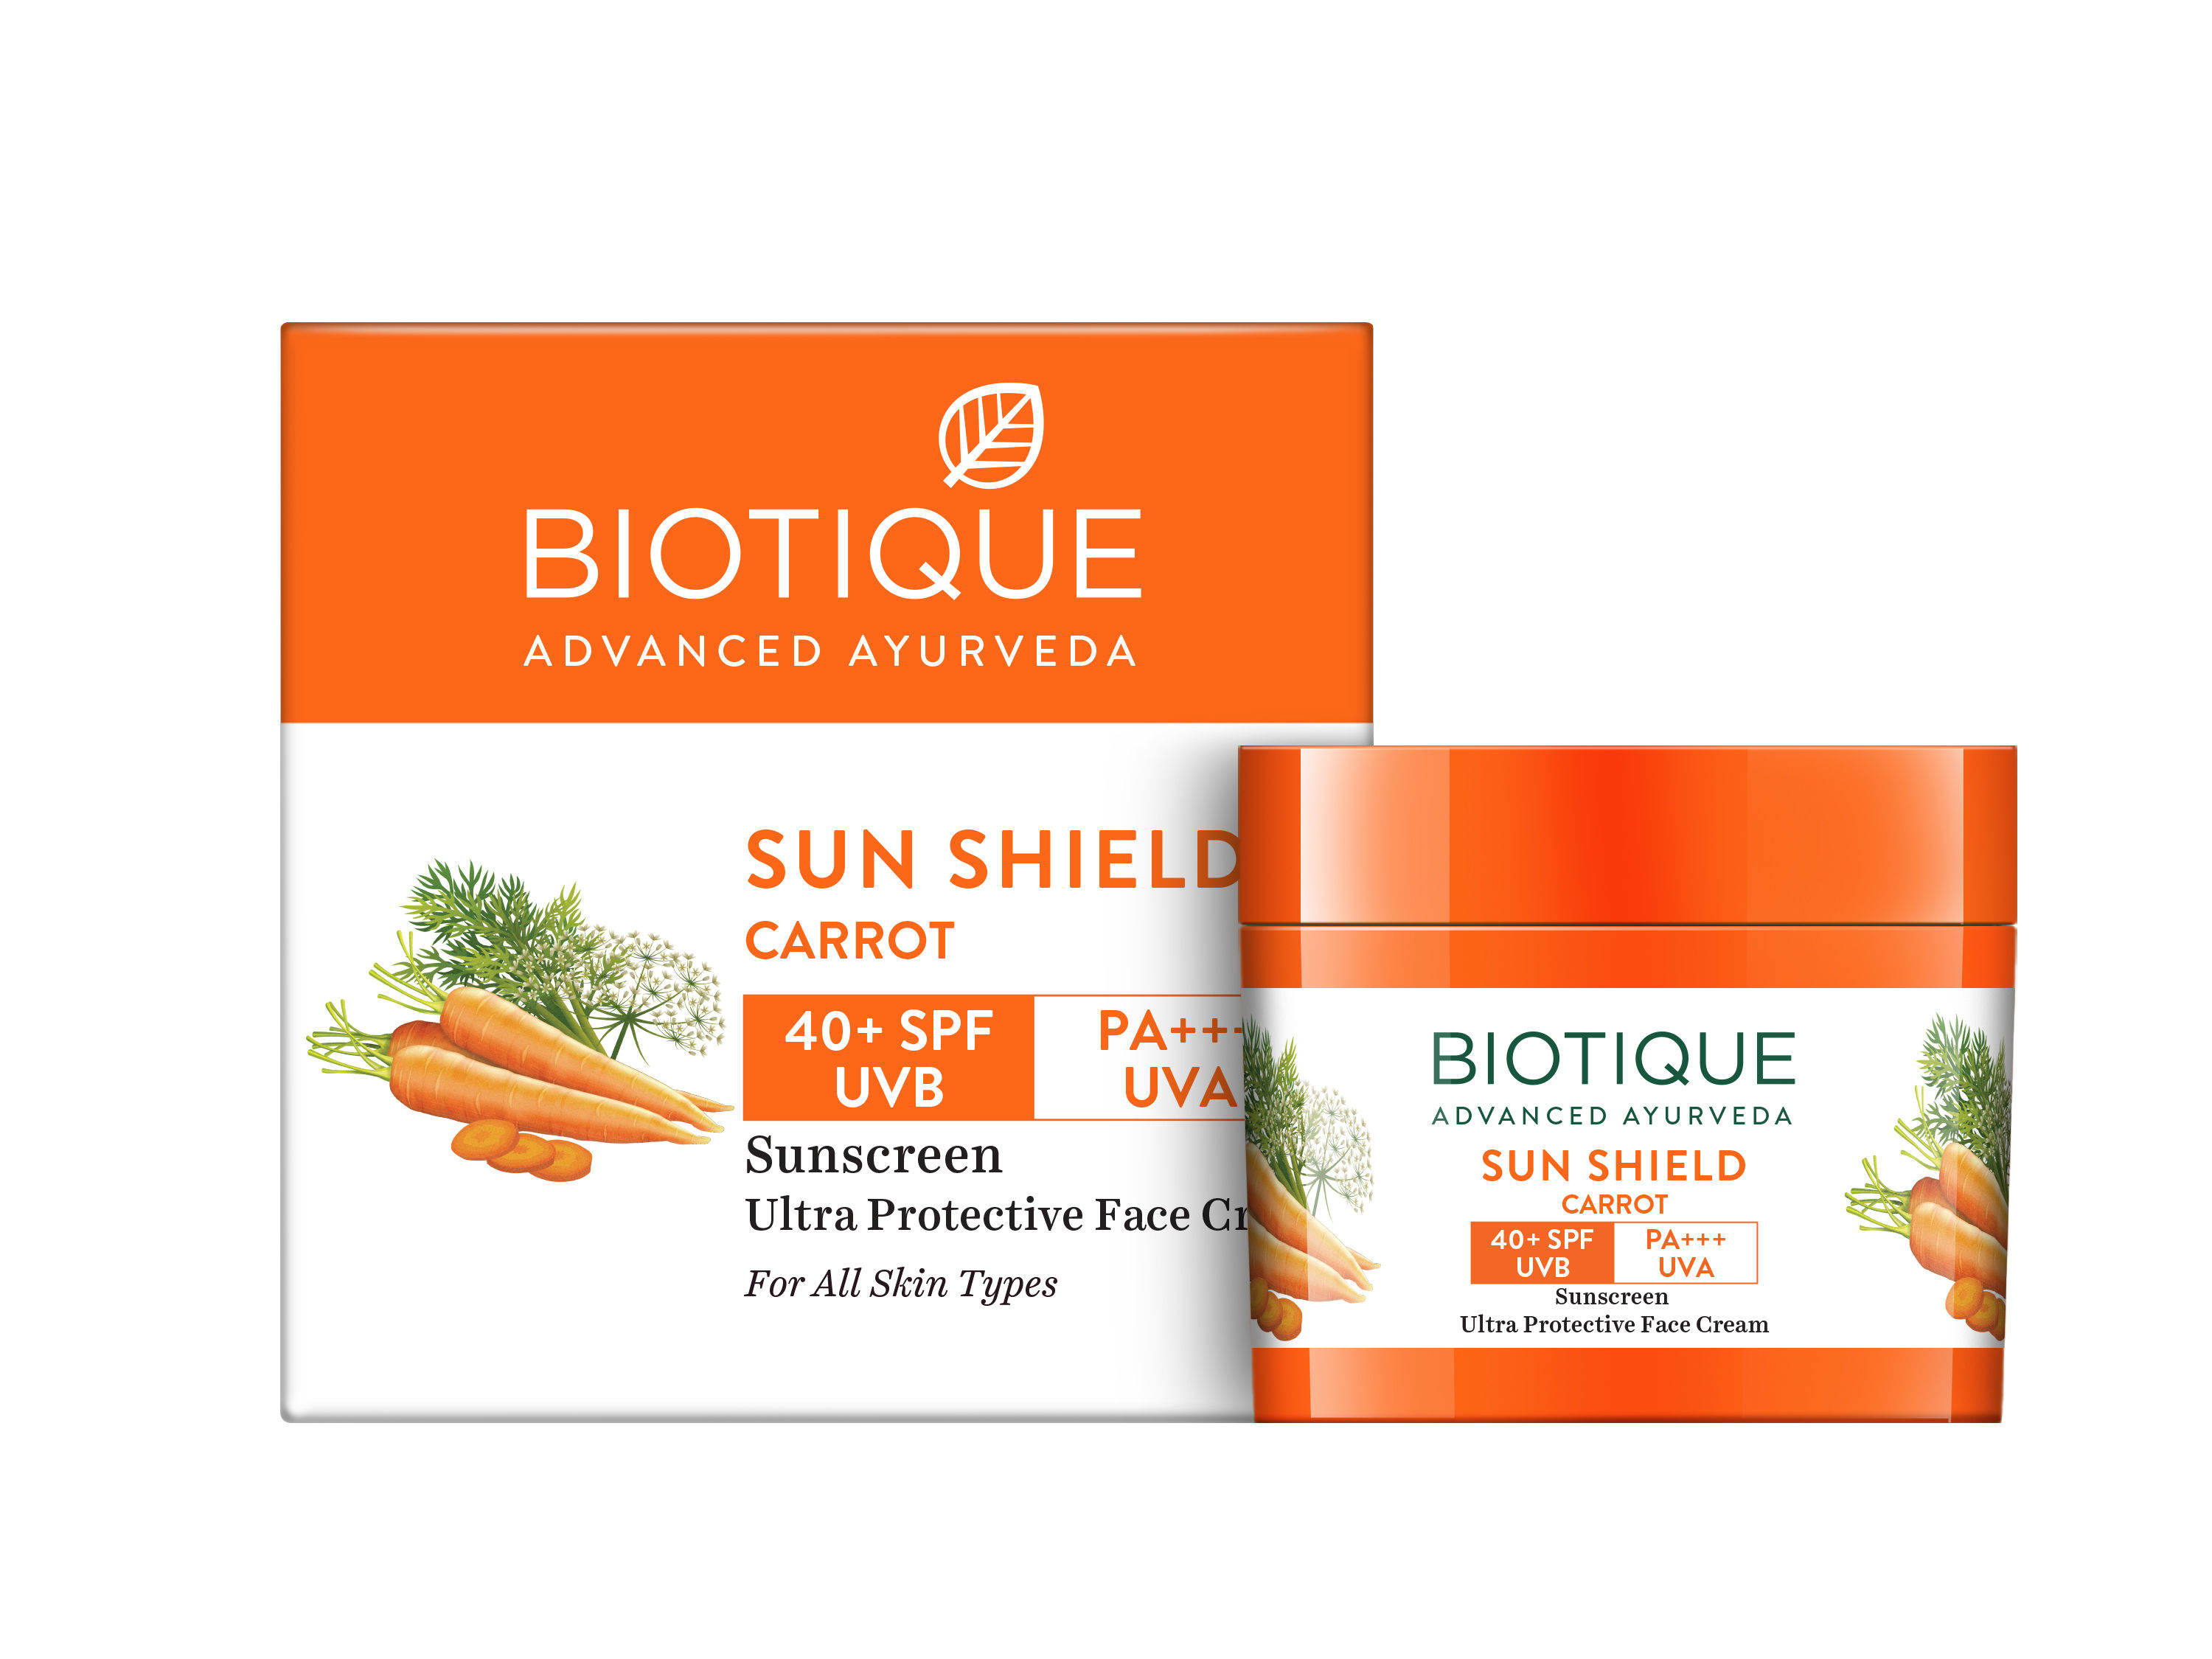 Biotique SUN SHIELD Carrot Ultra Protective Face Cream 40+ SPF Sunscreen